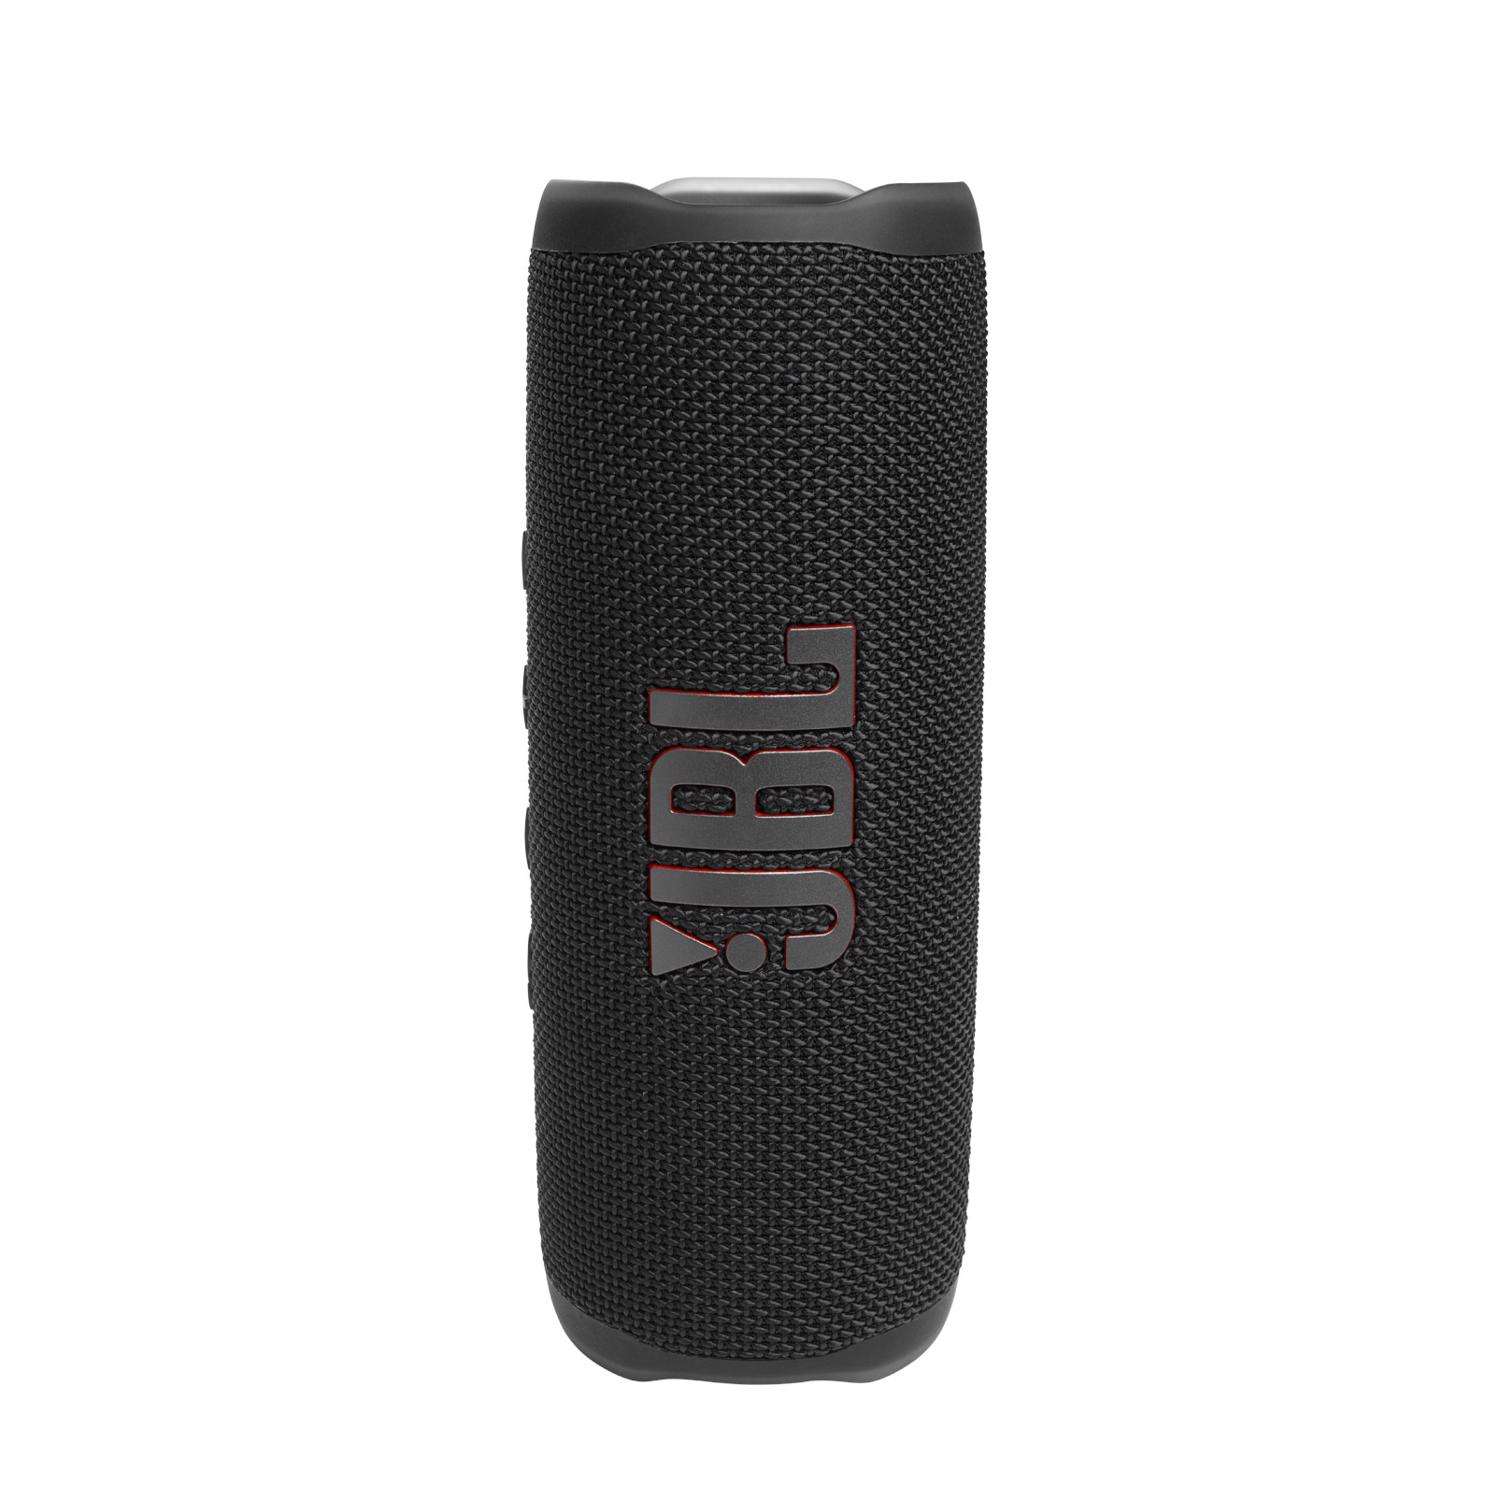 elleve tilbagemeldinger Optagelsesgebyr JBL Wireless Bluetooth Portable Speaker - Ace Hardware